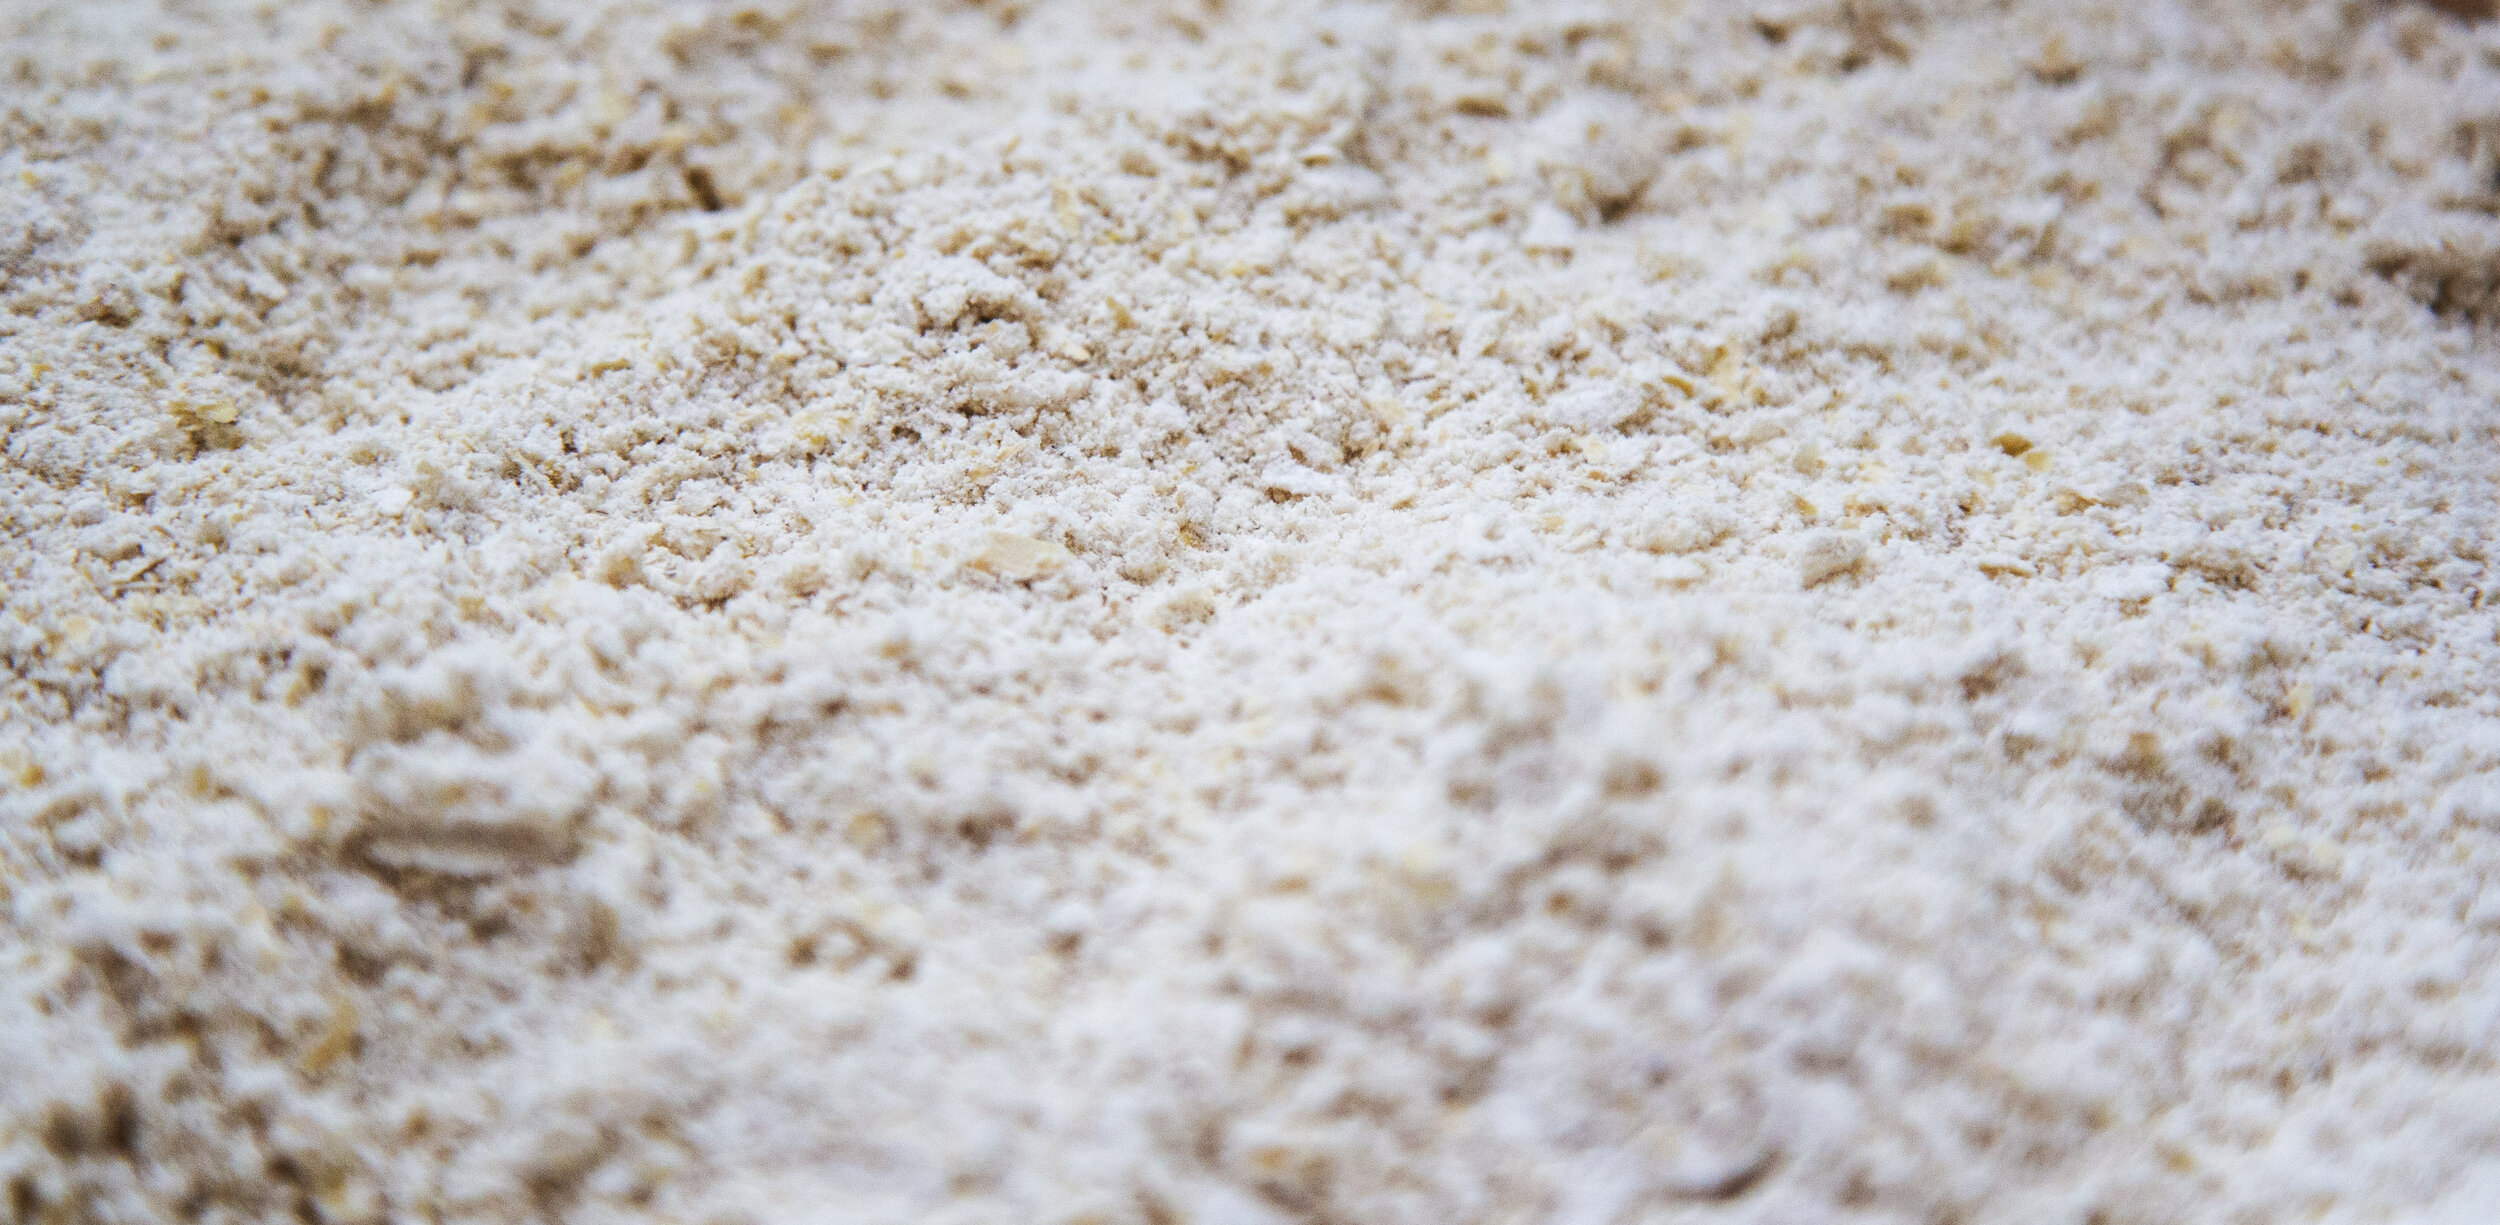 wholesale-oat-flour.jpg